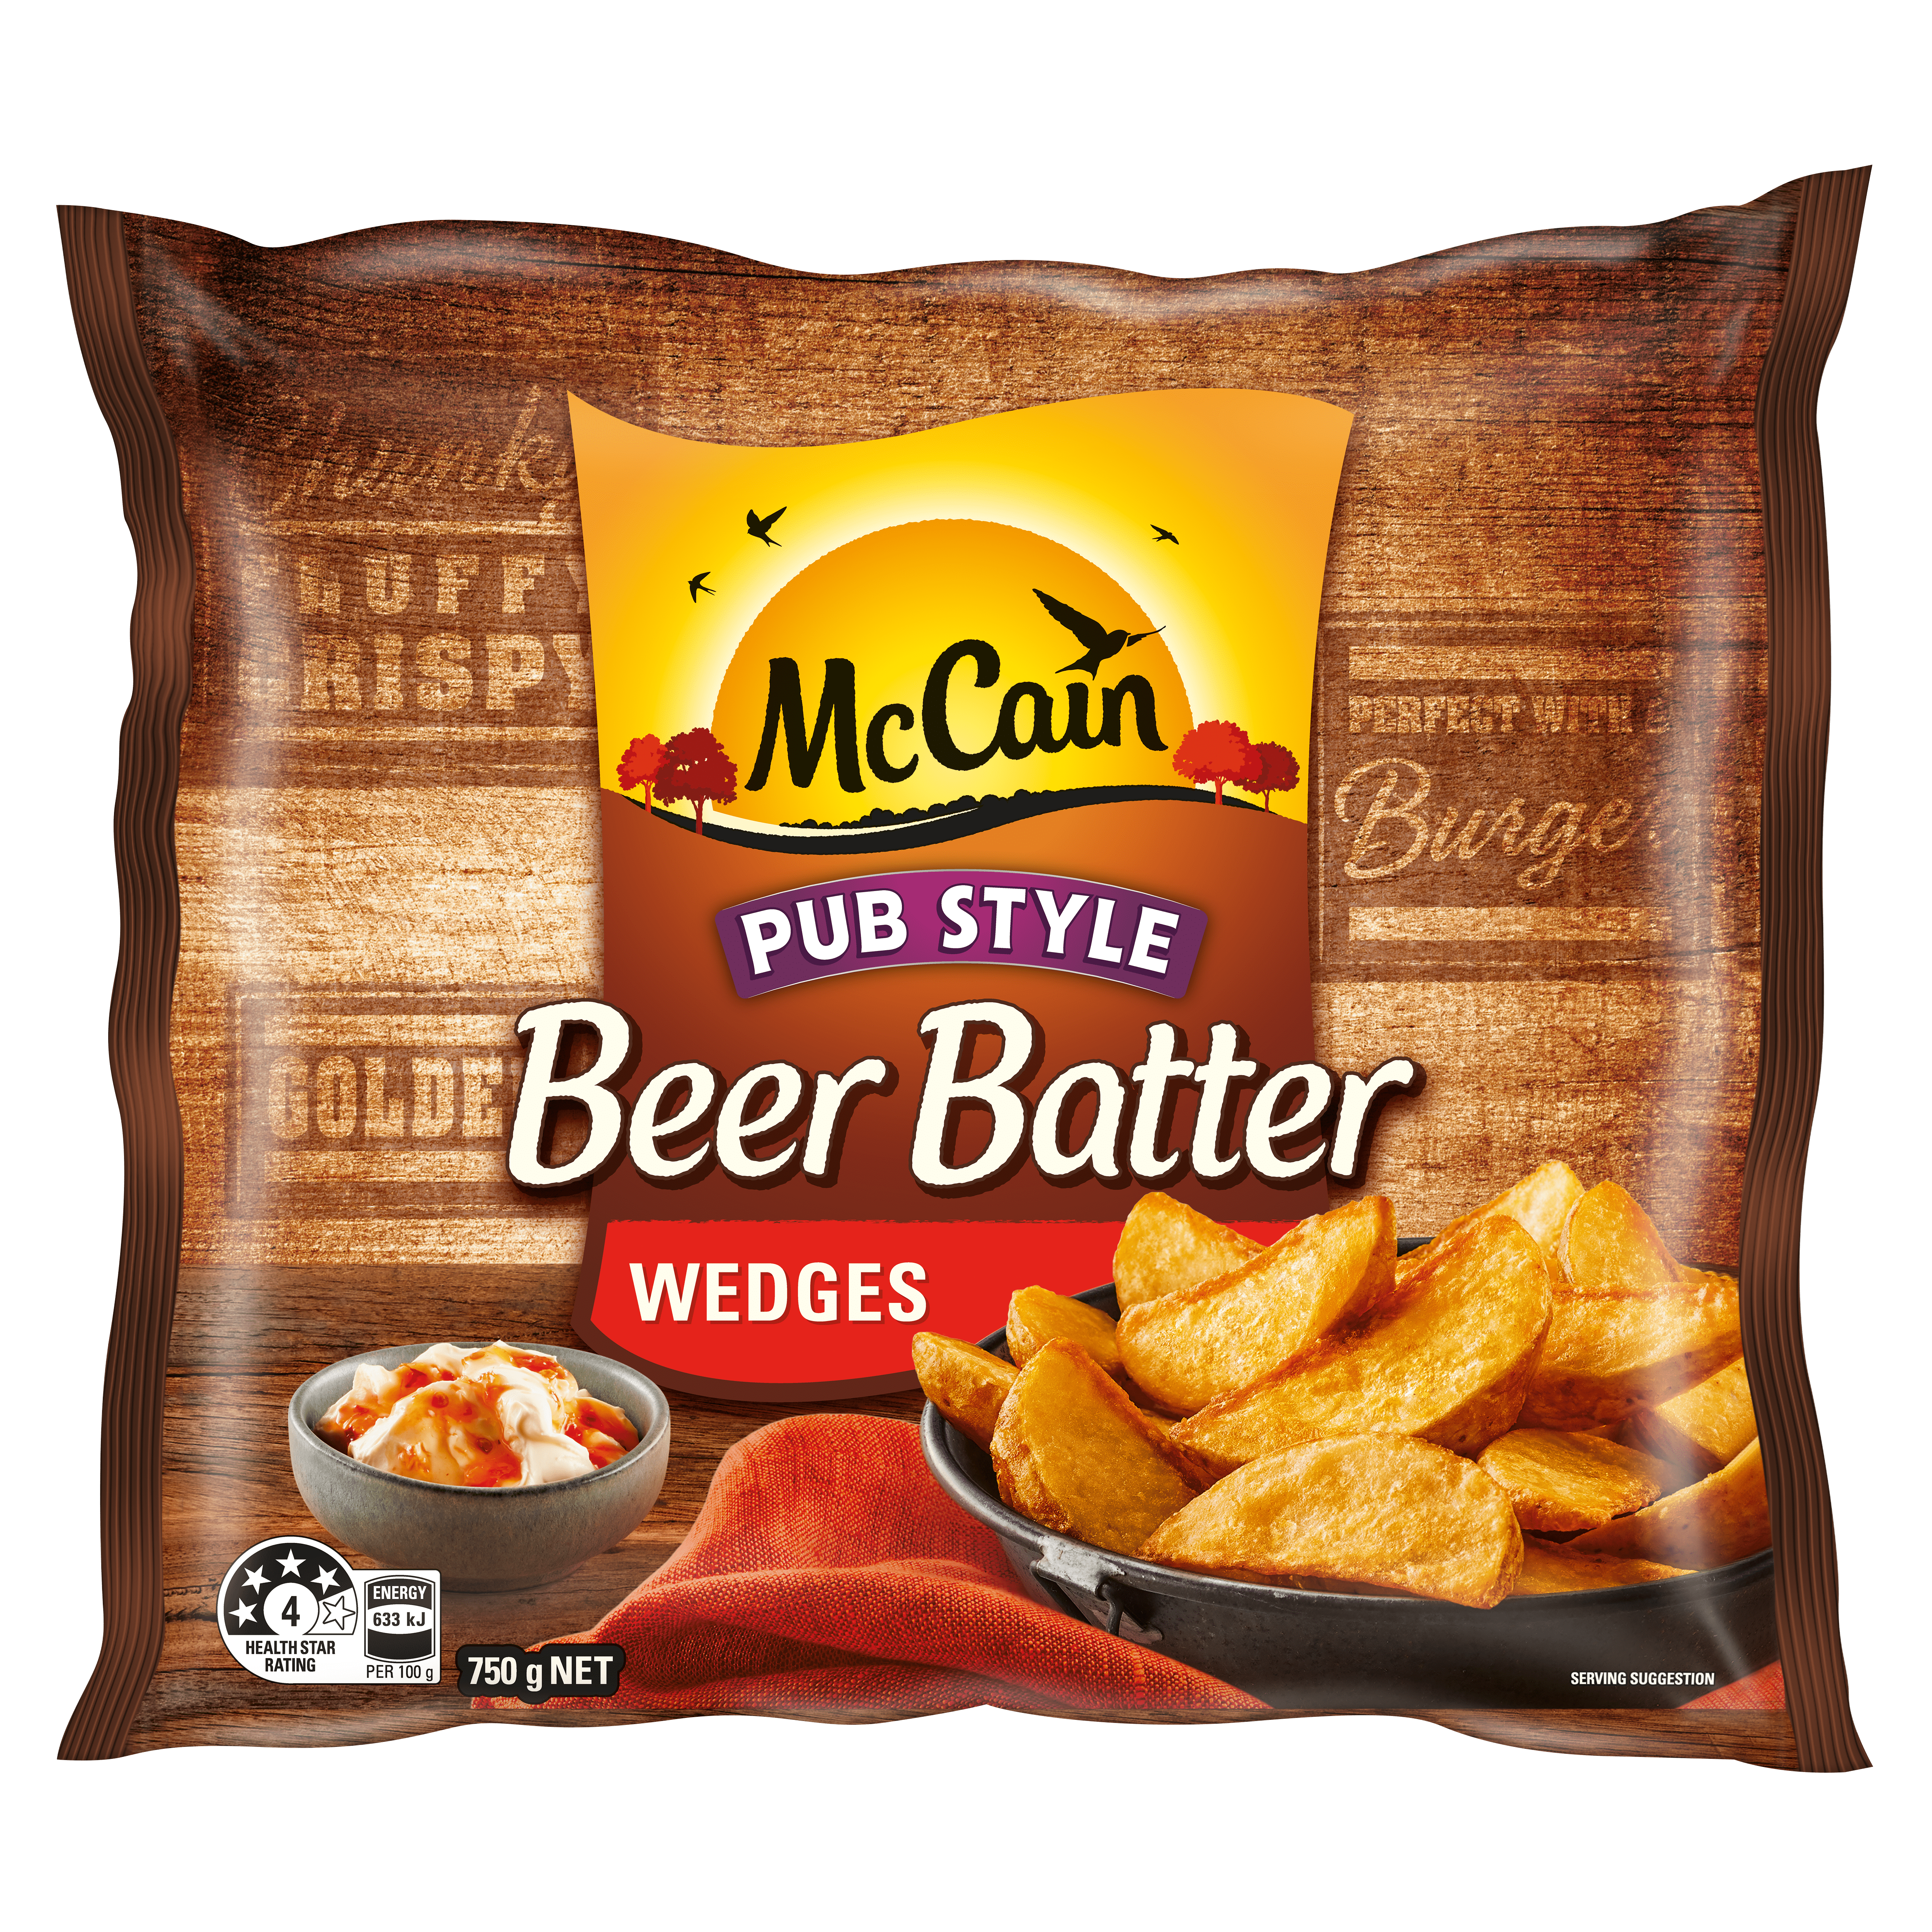 https://mccain.com.au/media/bbmb20e4/jmi2100455_pub-style-beer-batter-potato-wedges_750g_fop_v1-min.png